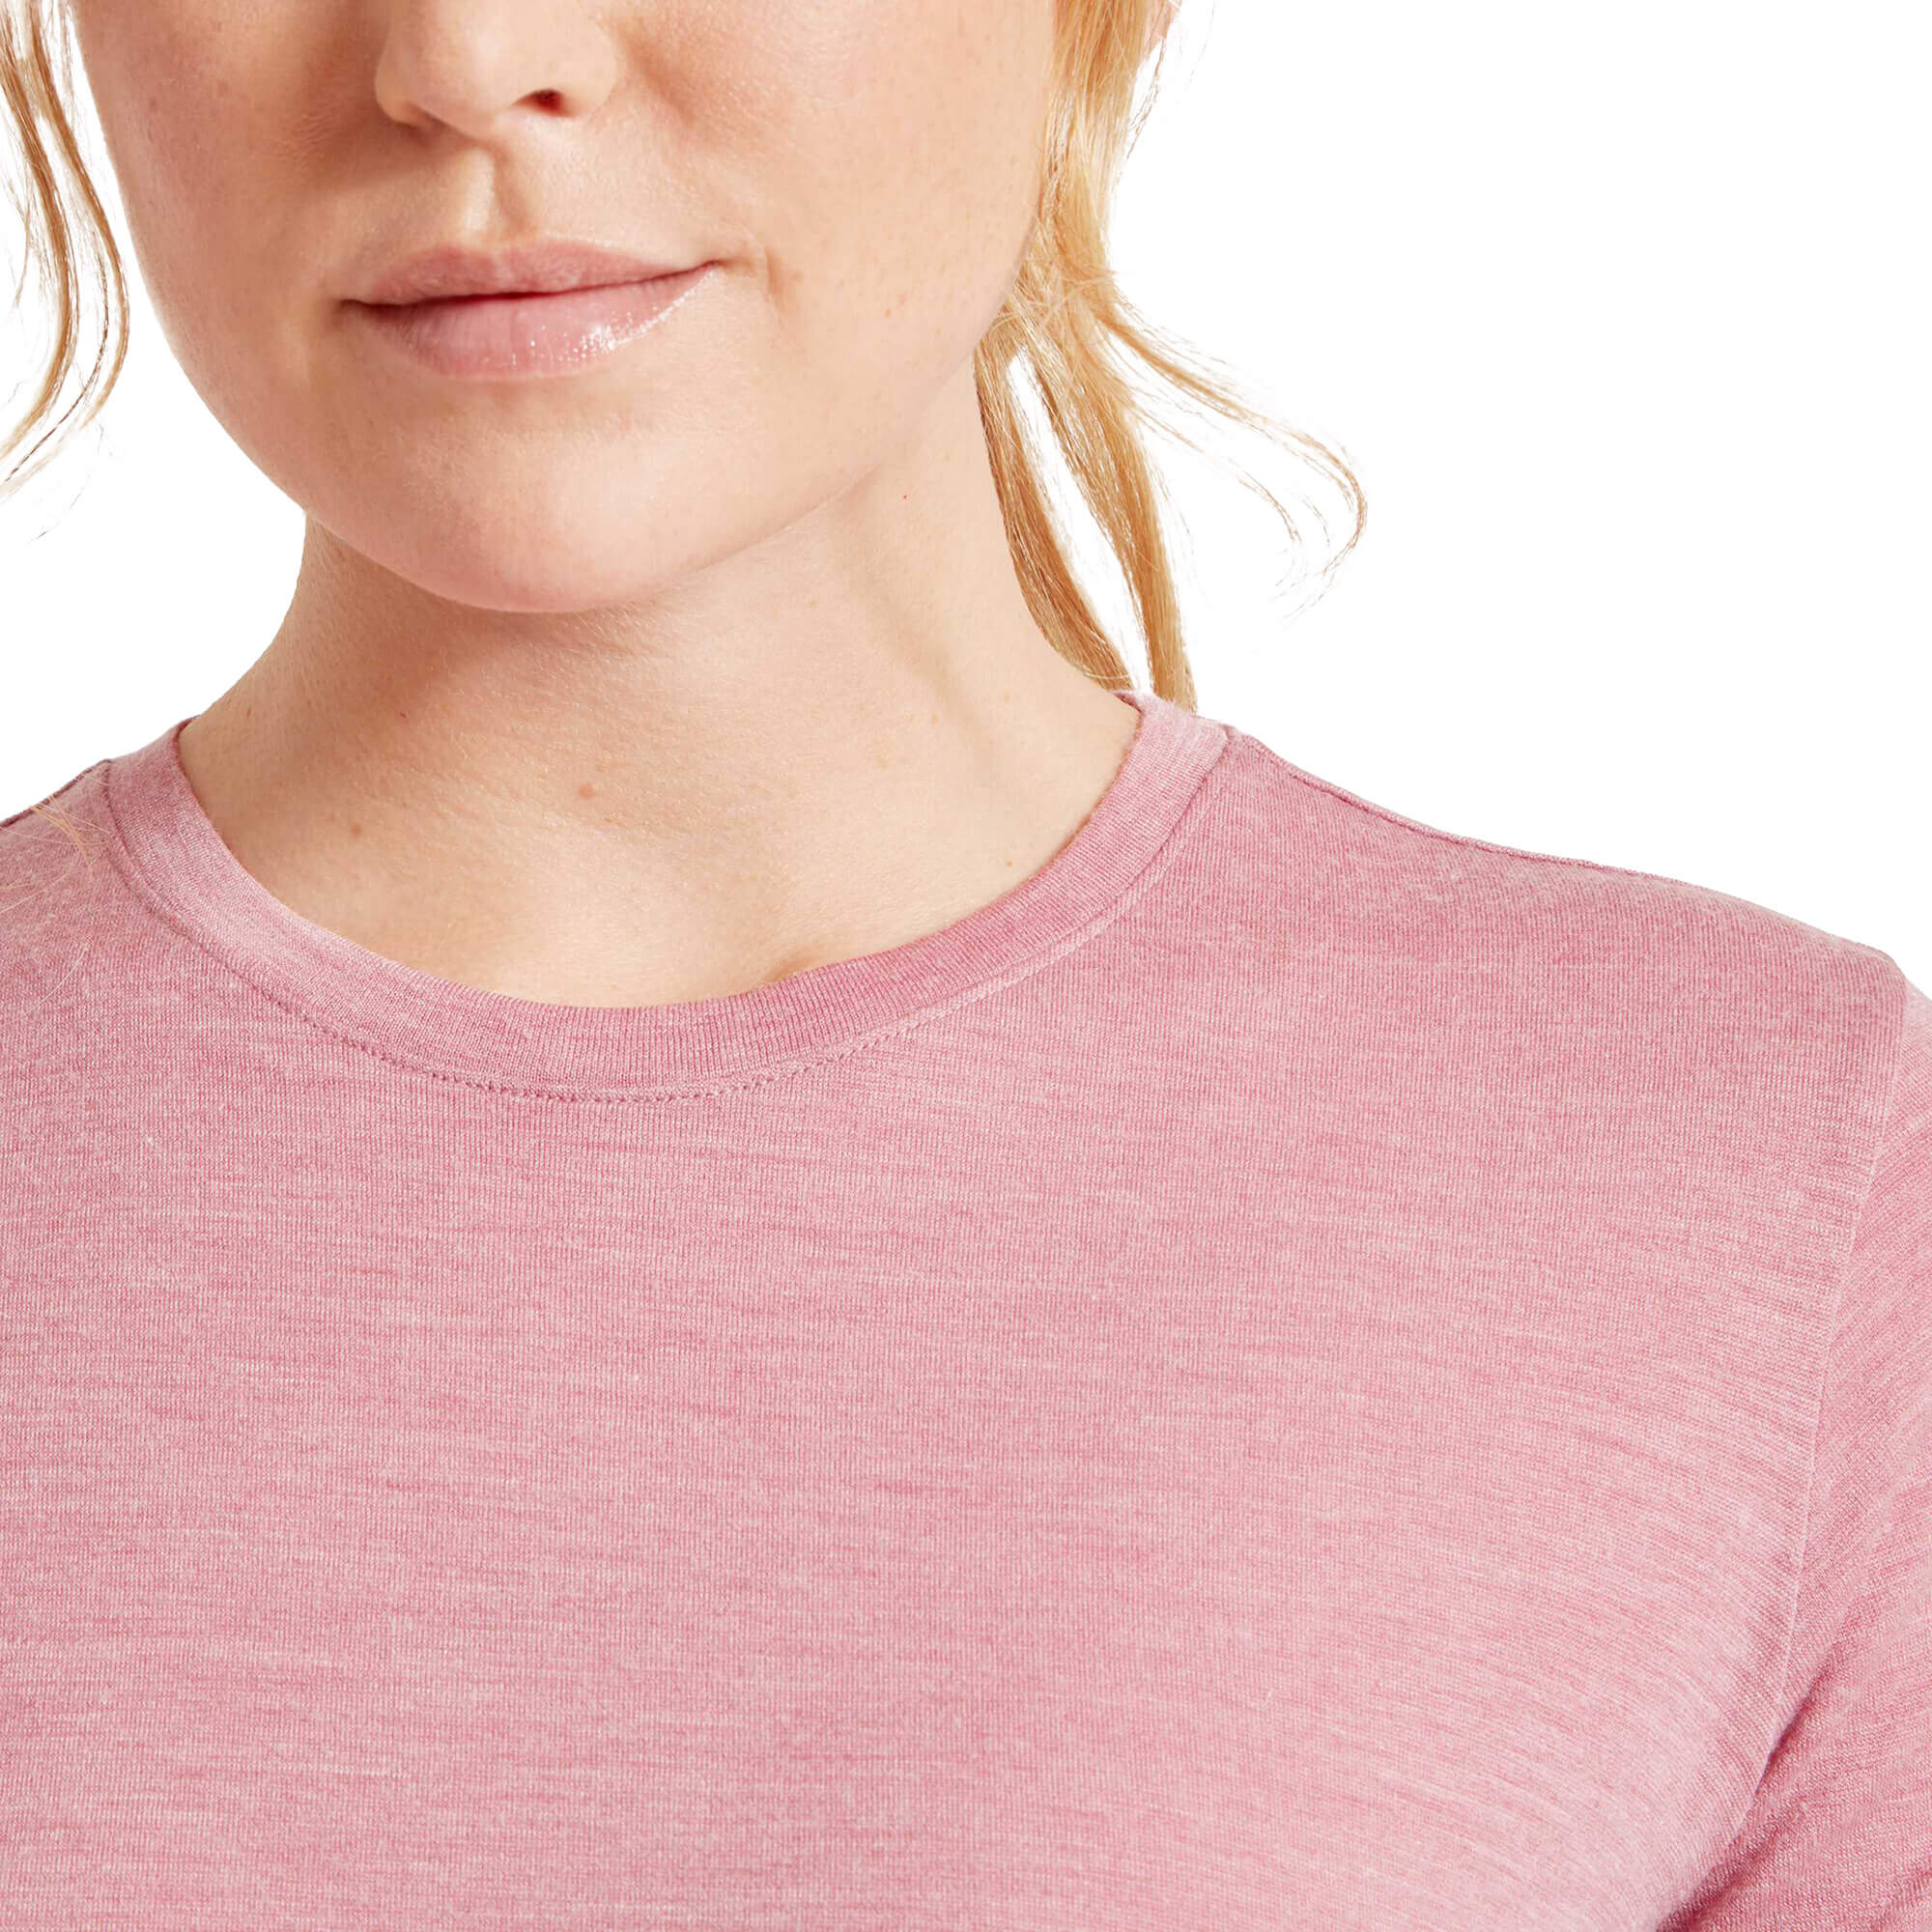 Artilect Utilitee Short Sleeve Women's T-Shirt